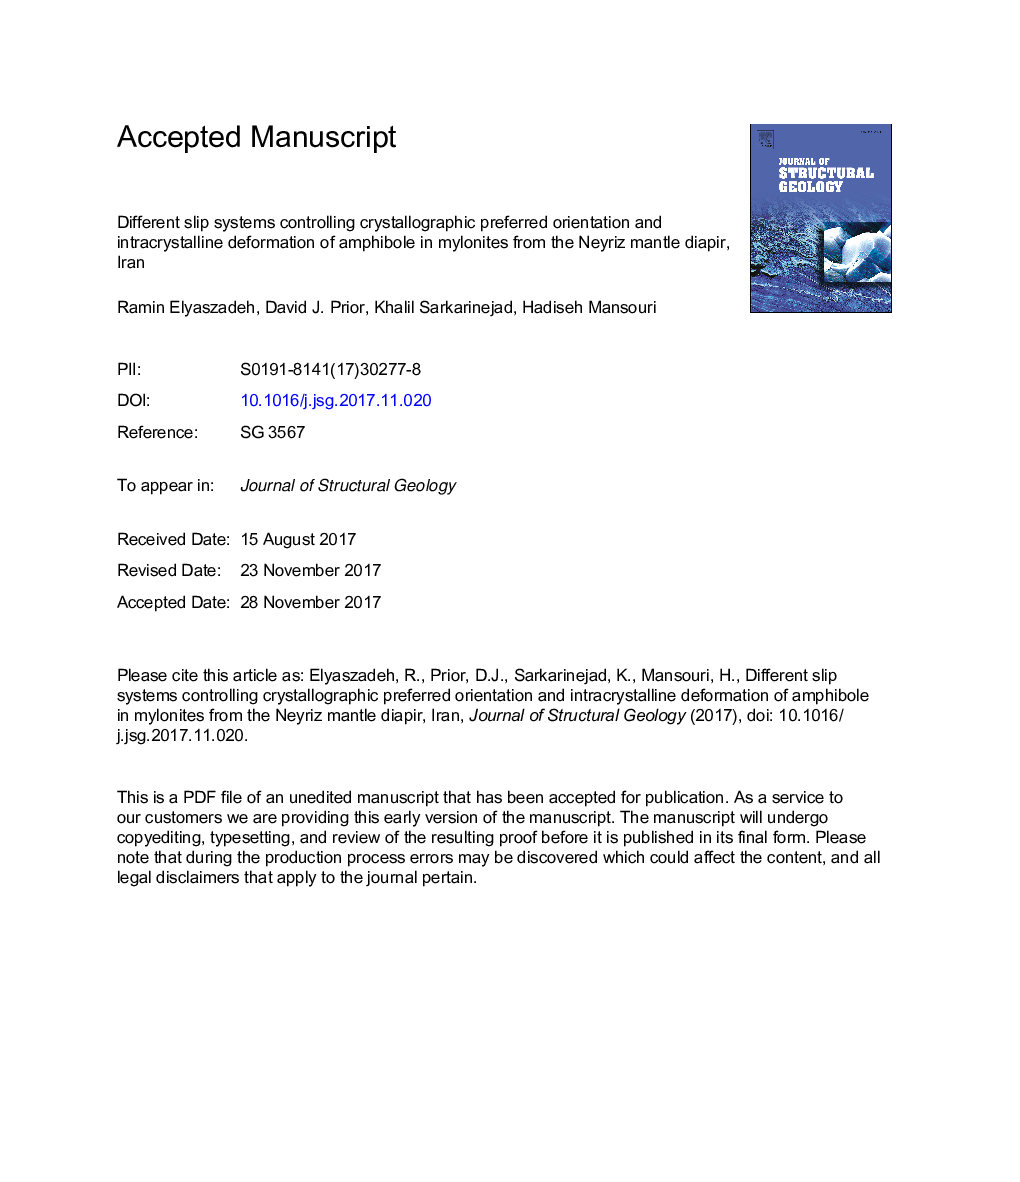 سیستم های لغزش گوناگون جهت هدایت گرایش کریستالوگرافی و تغییر شکل درون کریستالی آمفیبول در میلونیت ها از دیپیر مانتیور نوریز، ایران